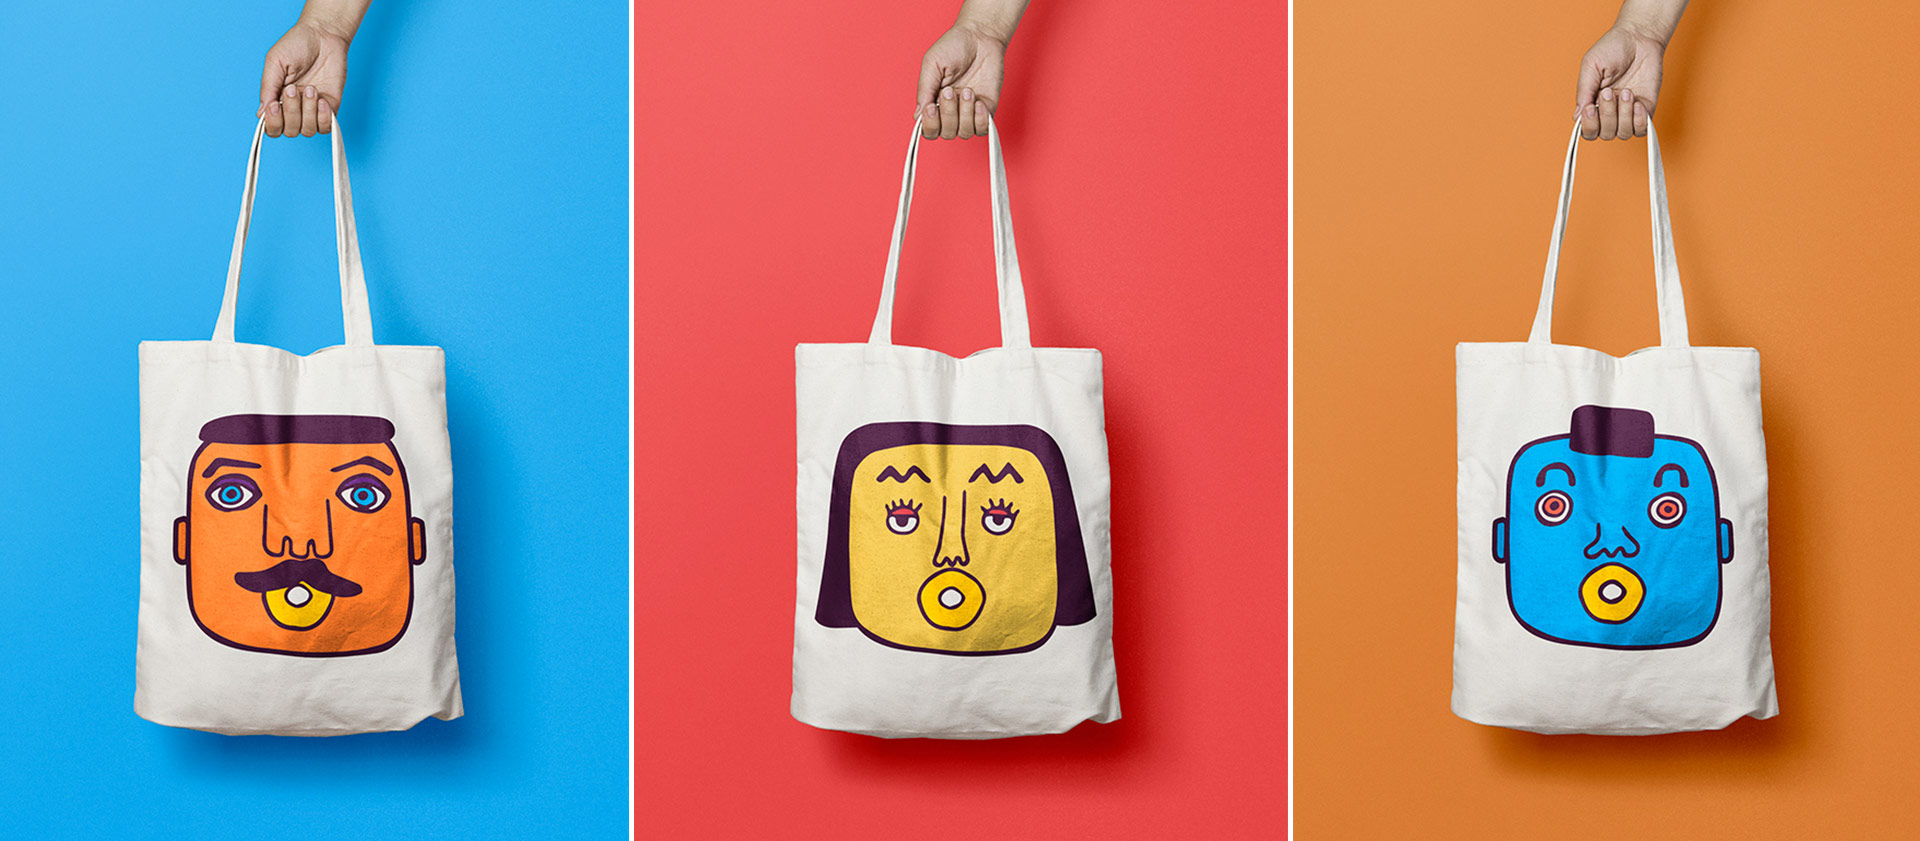 Einkaufstaschen mit Illustrationen von unterschiedlichen Gesichtern in verschiedenen Farben